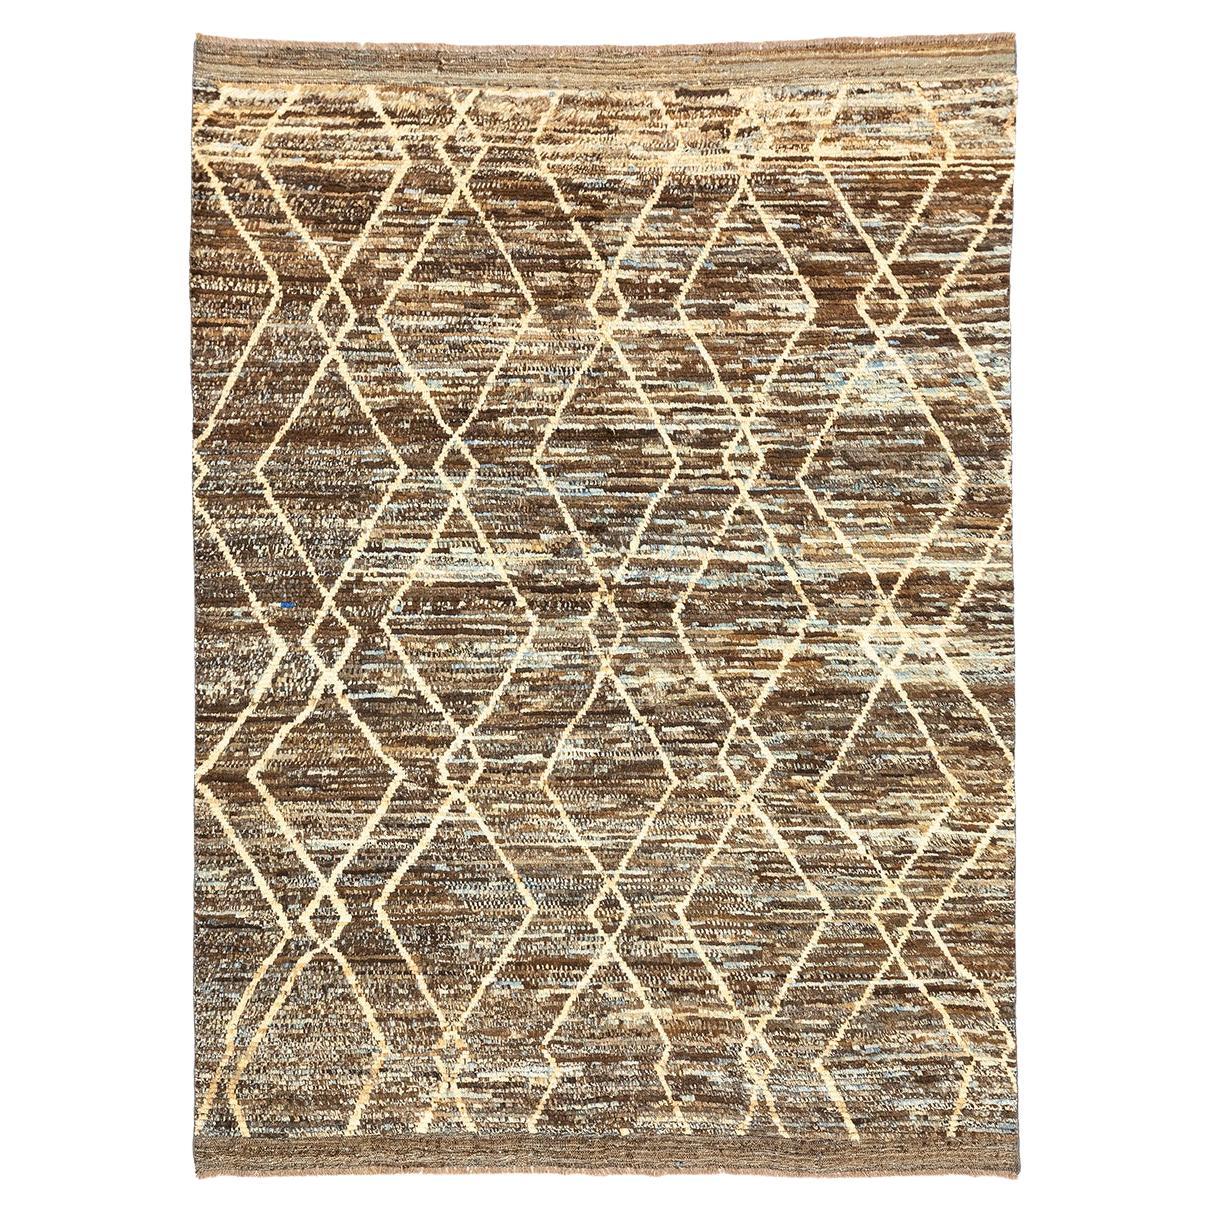 Marokkanischer Teppich Handcrafted Echte Wolle